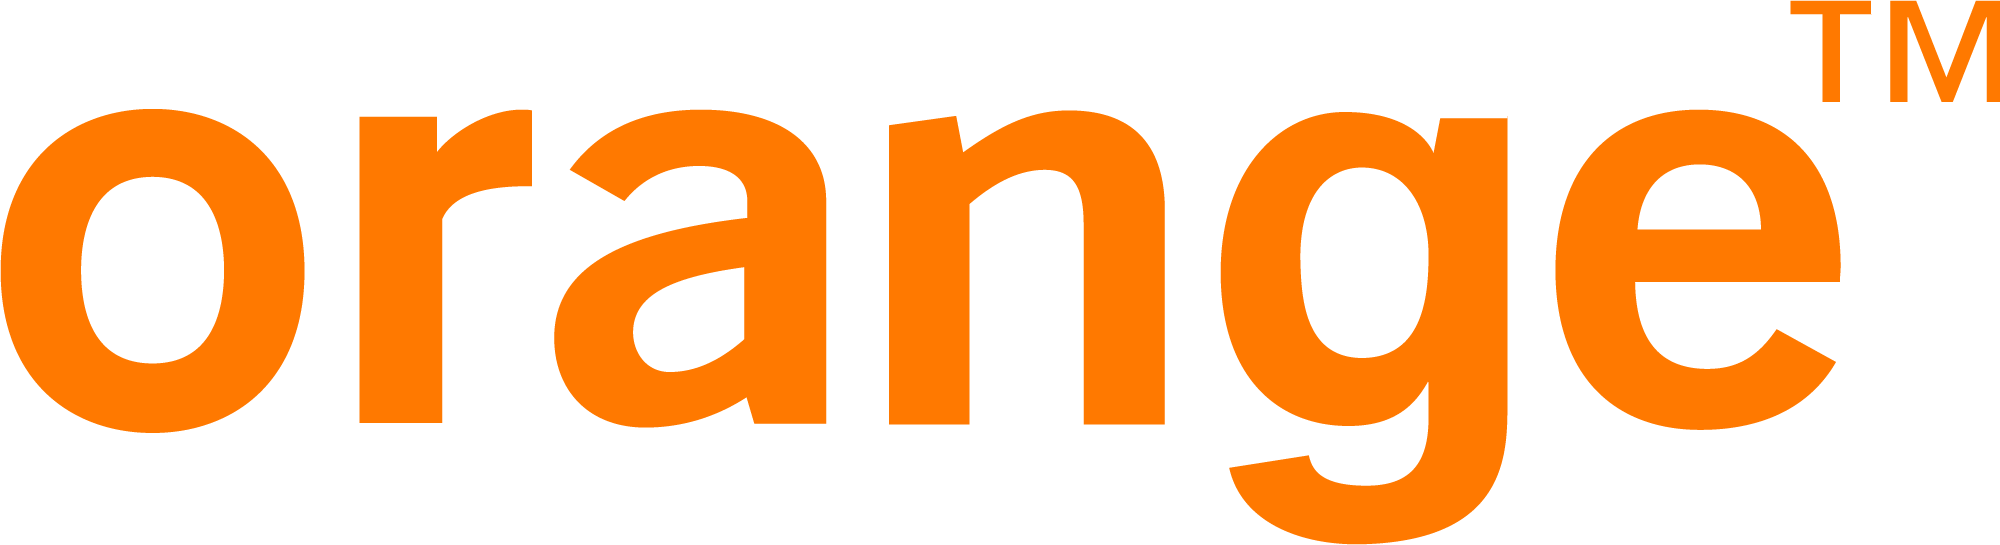 orange telecom logo